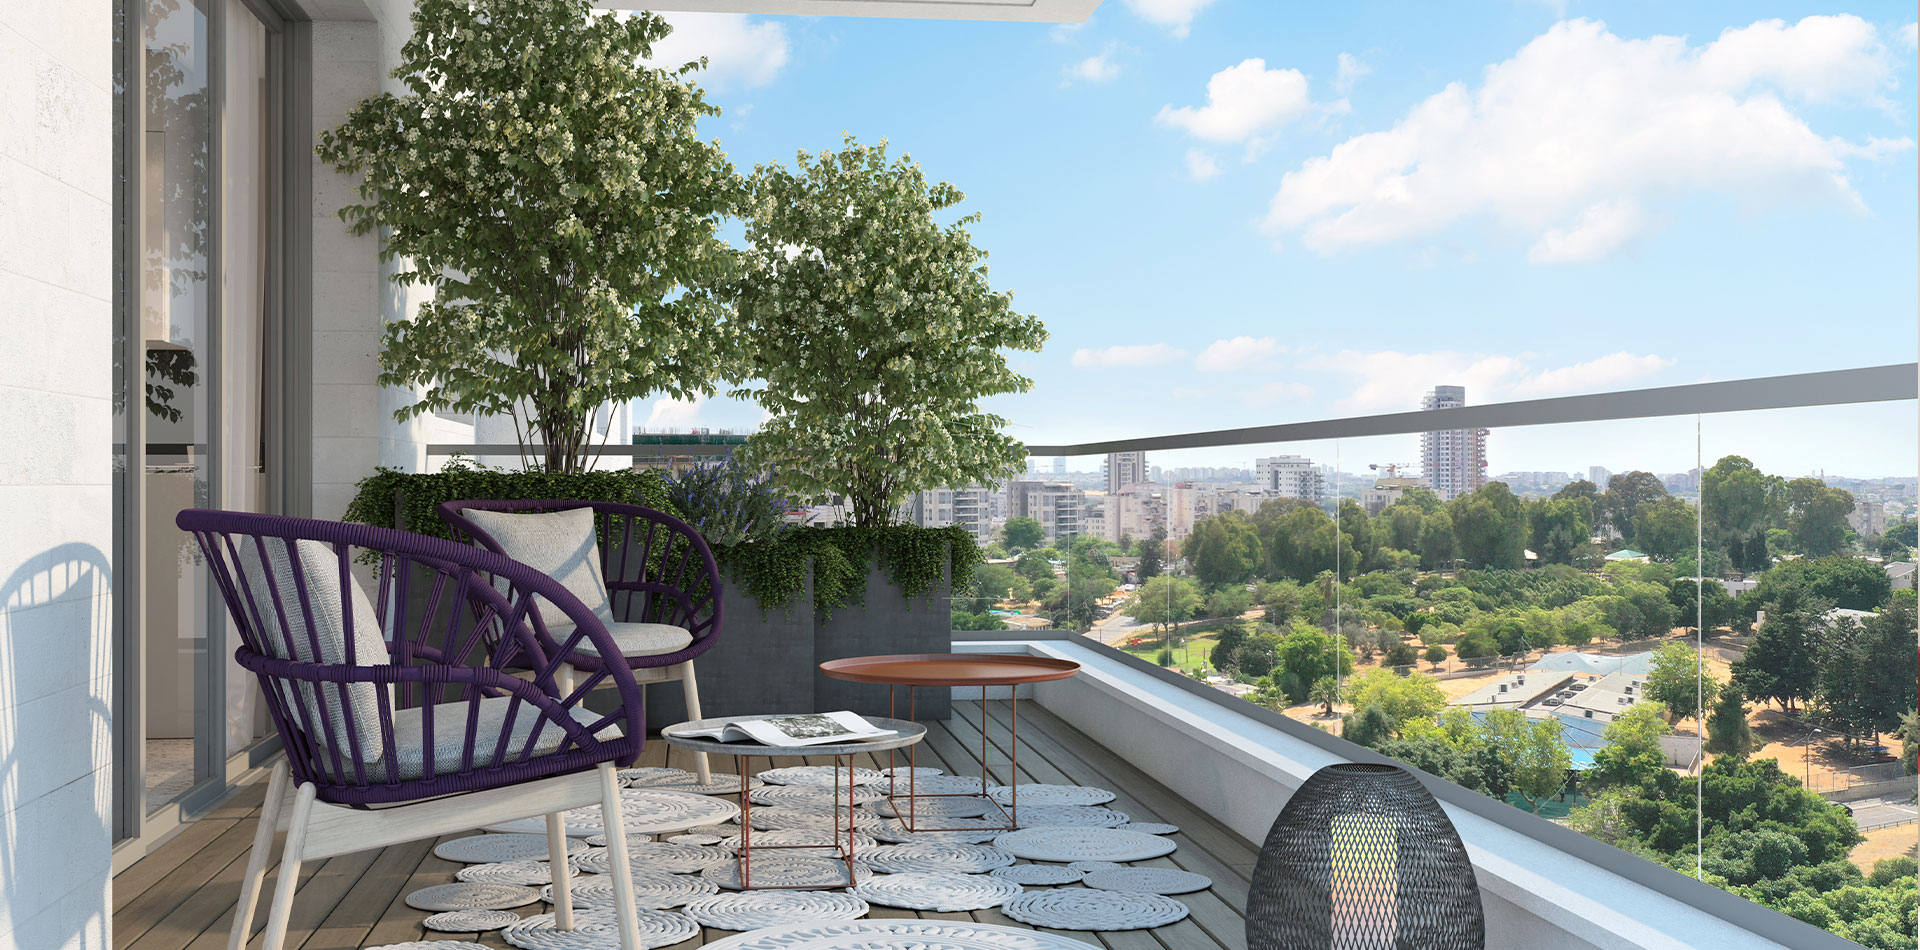 הדמיית חוץ מרפסת מעוצבת עם ריהוט בפרויקט אוליבר תל אביב